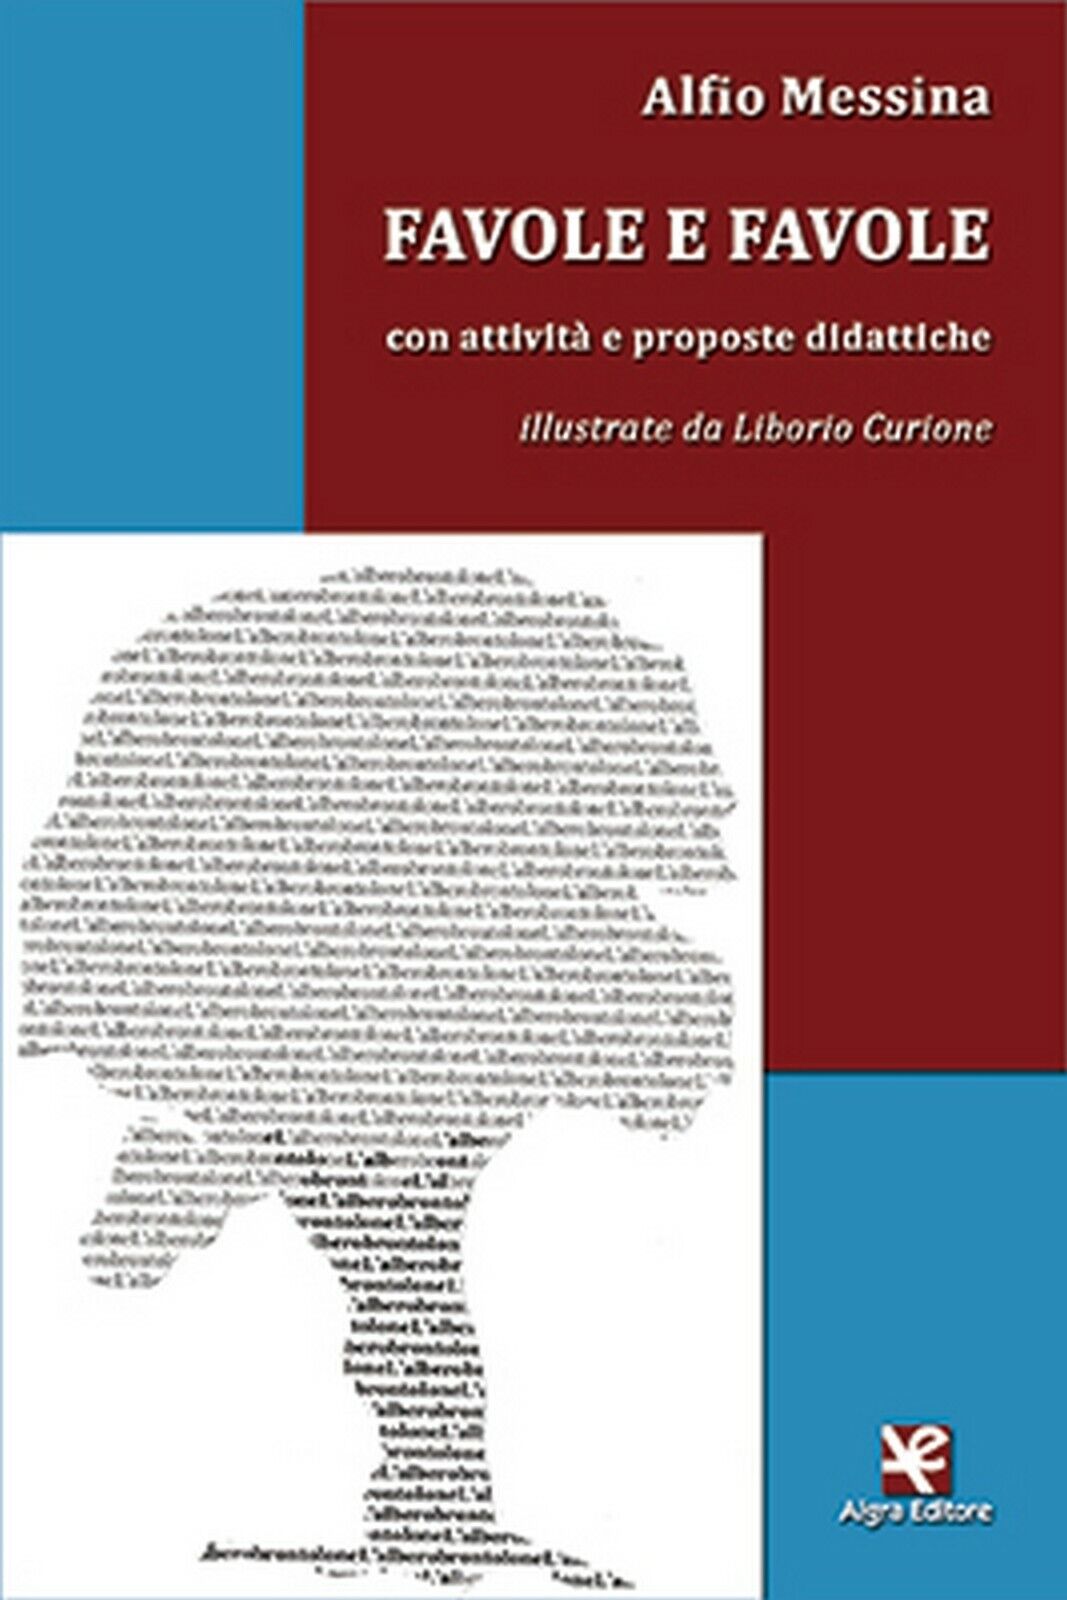 Favole e favole (con attivit? e proposte didattiche)  di Alfio Messina,  2020  